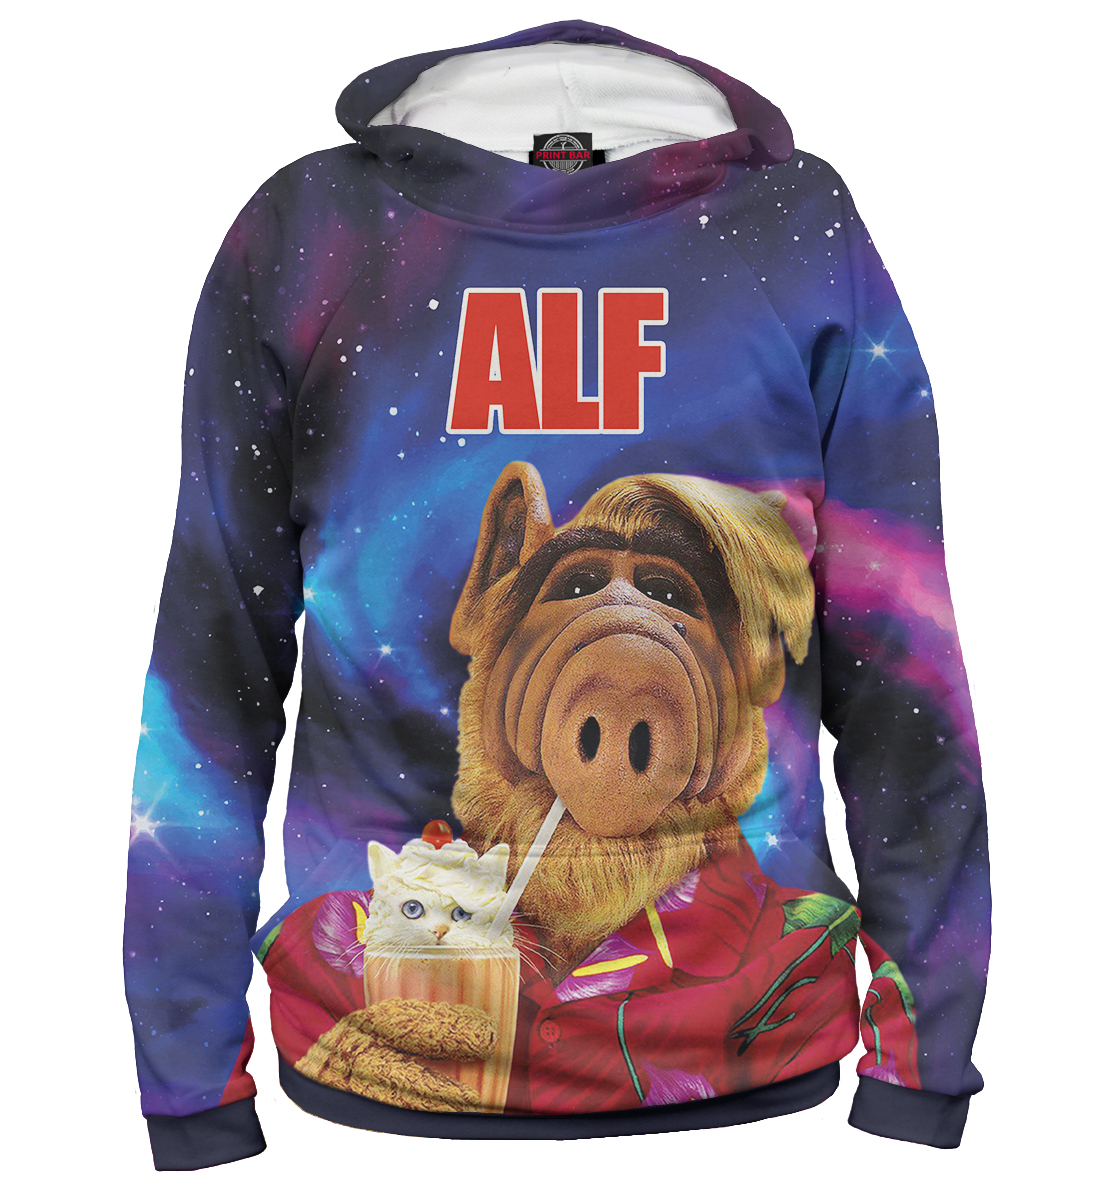 

Alf